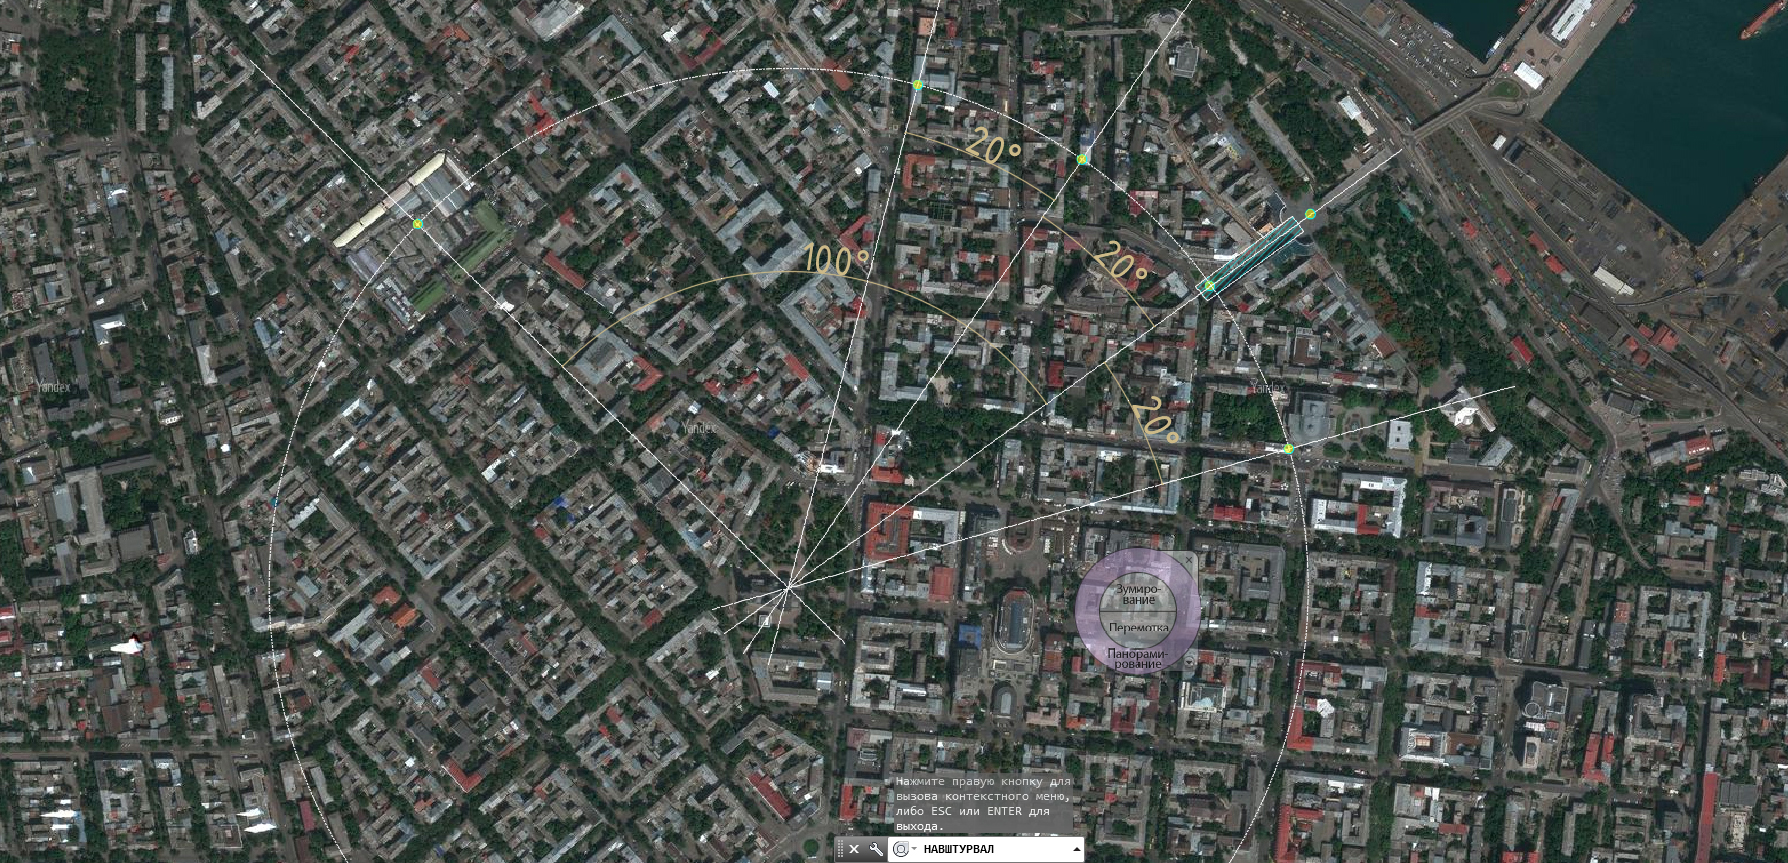 Фото со спутника в реальном времени бесплатно россия в хорошем качестве онлайн бесплатно посмотреть